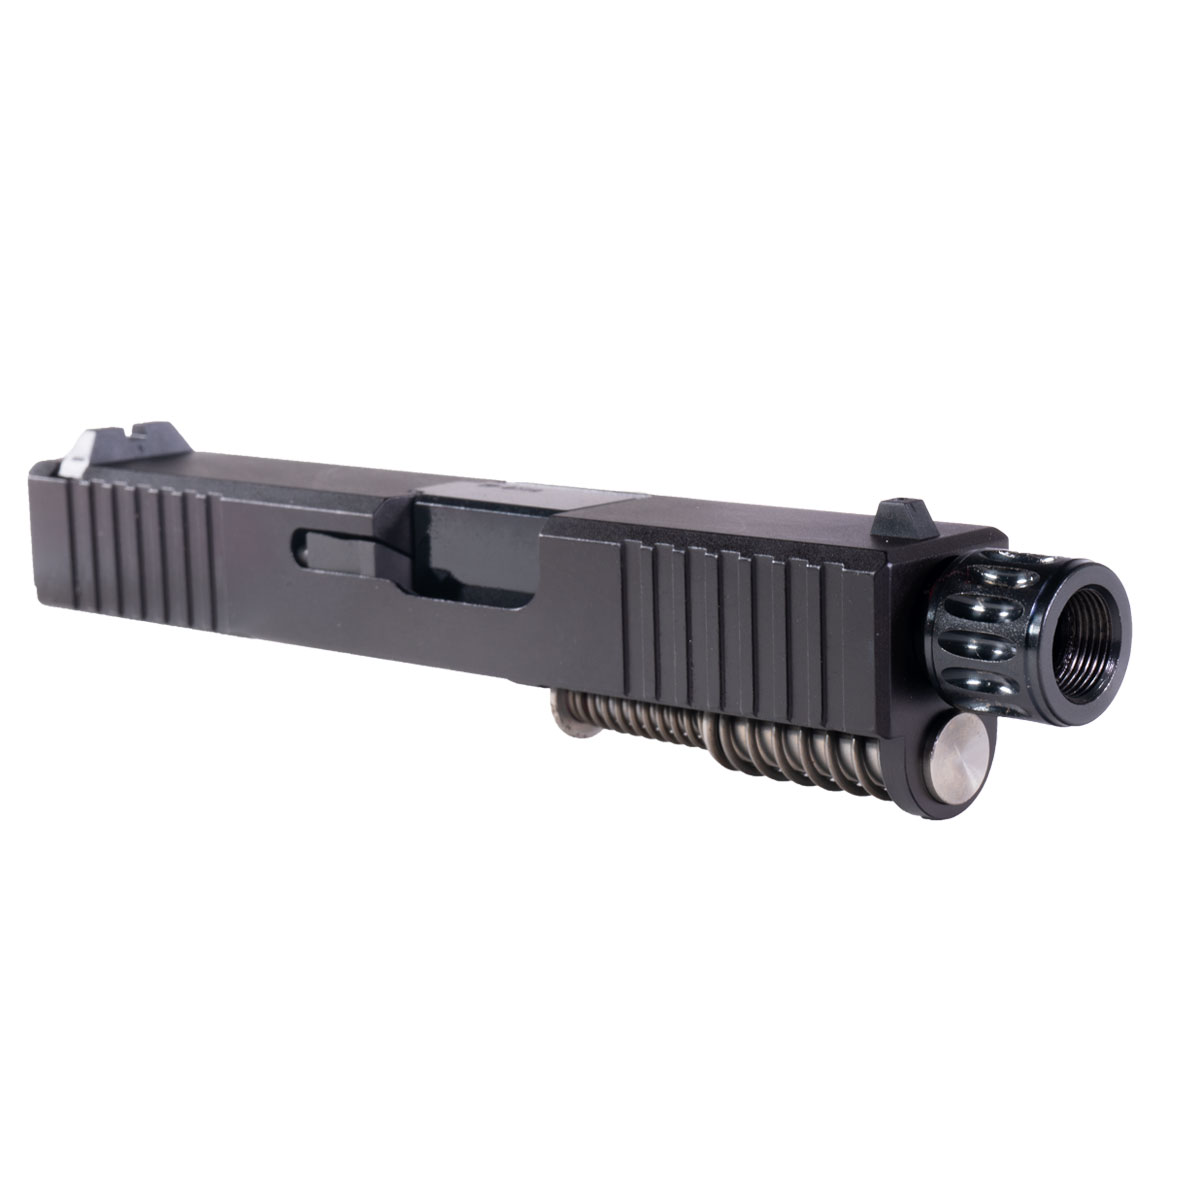 DTT 'Snub Nose' 9mm Complete Slide Kit - Glock 26 Gen 1-2 Compatible